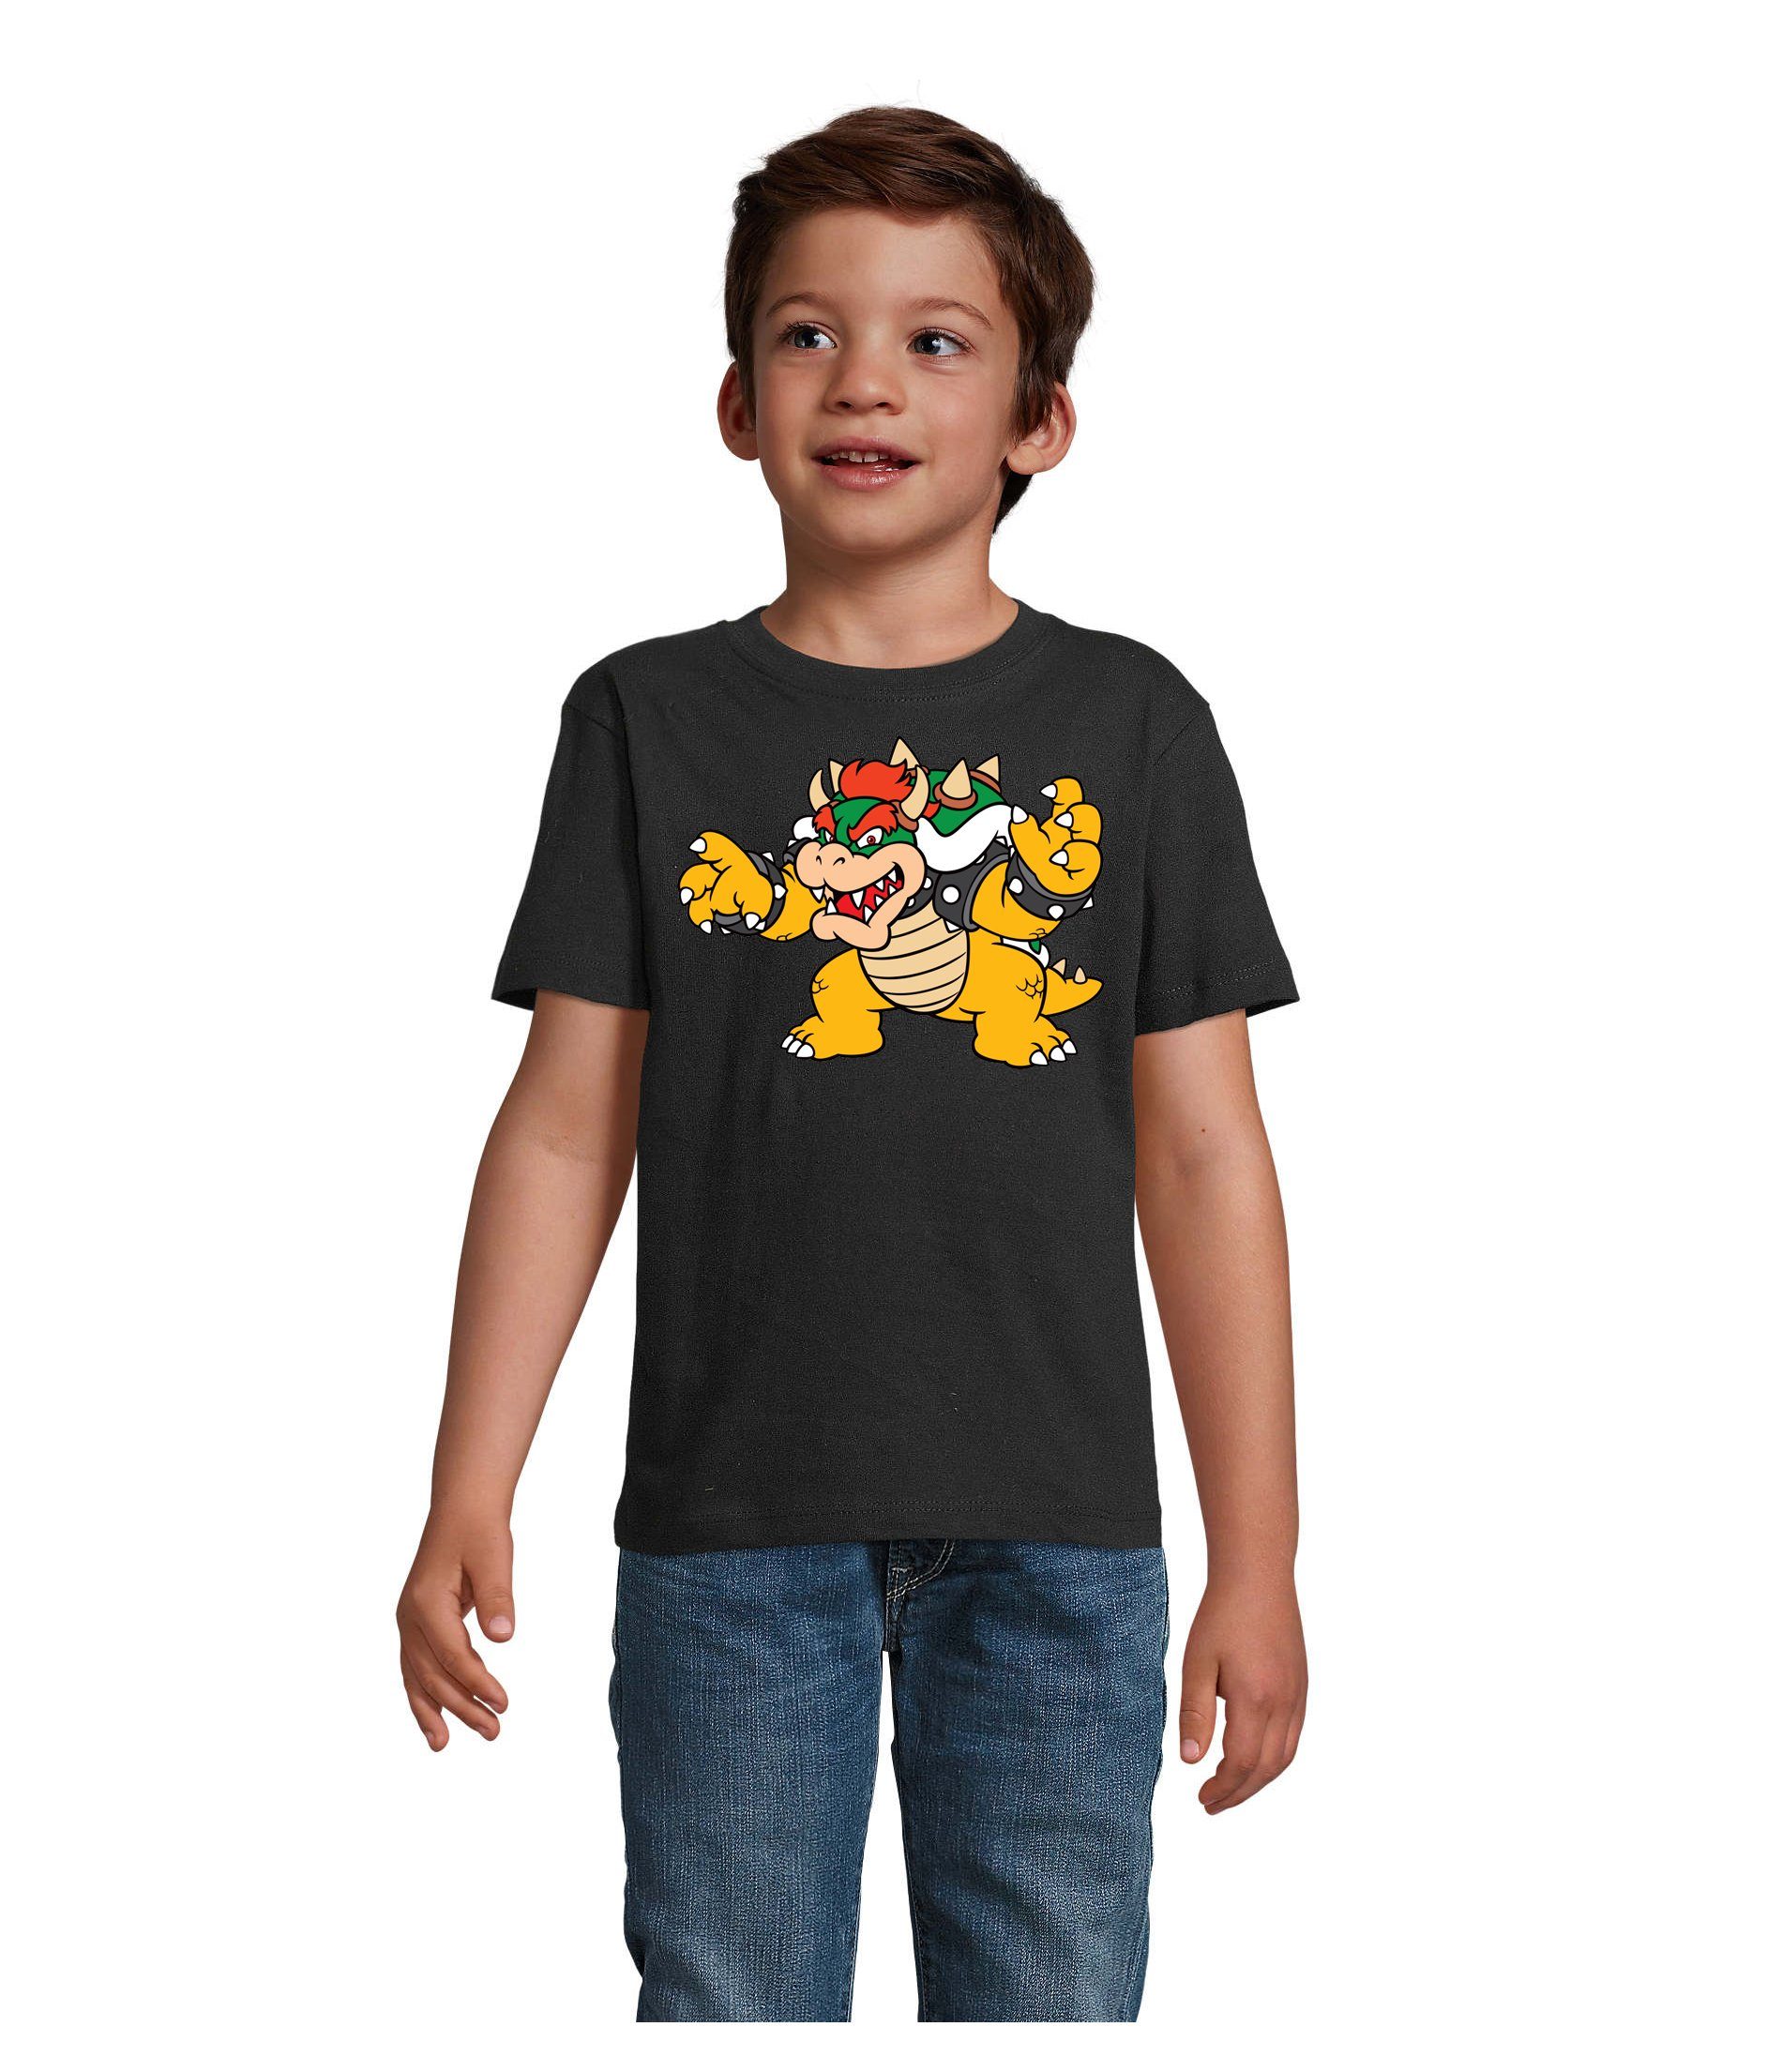 Blondie & Brownie T-Shirt Kinder Bowser Nintendo Mario Yoshi Luigi Game Gamer Konsole Schwarz